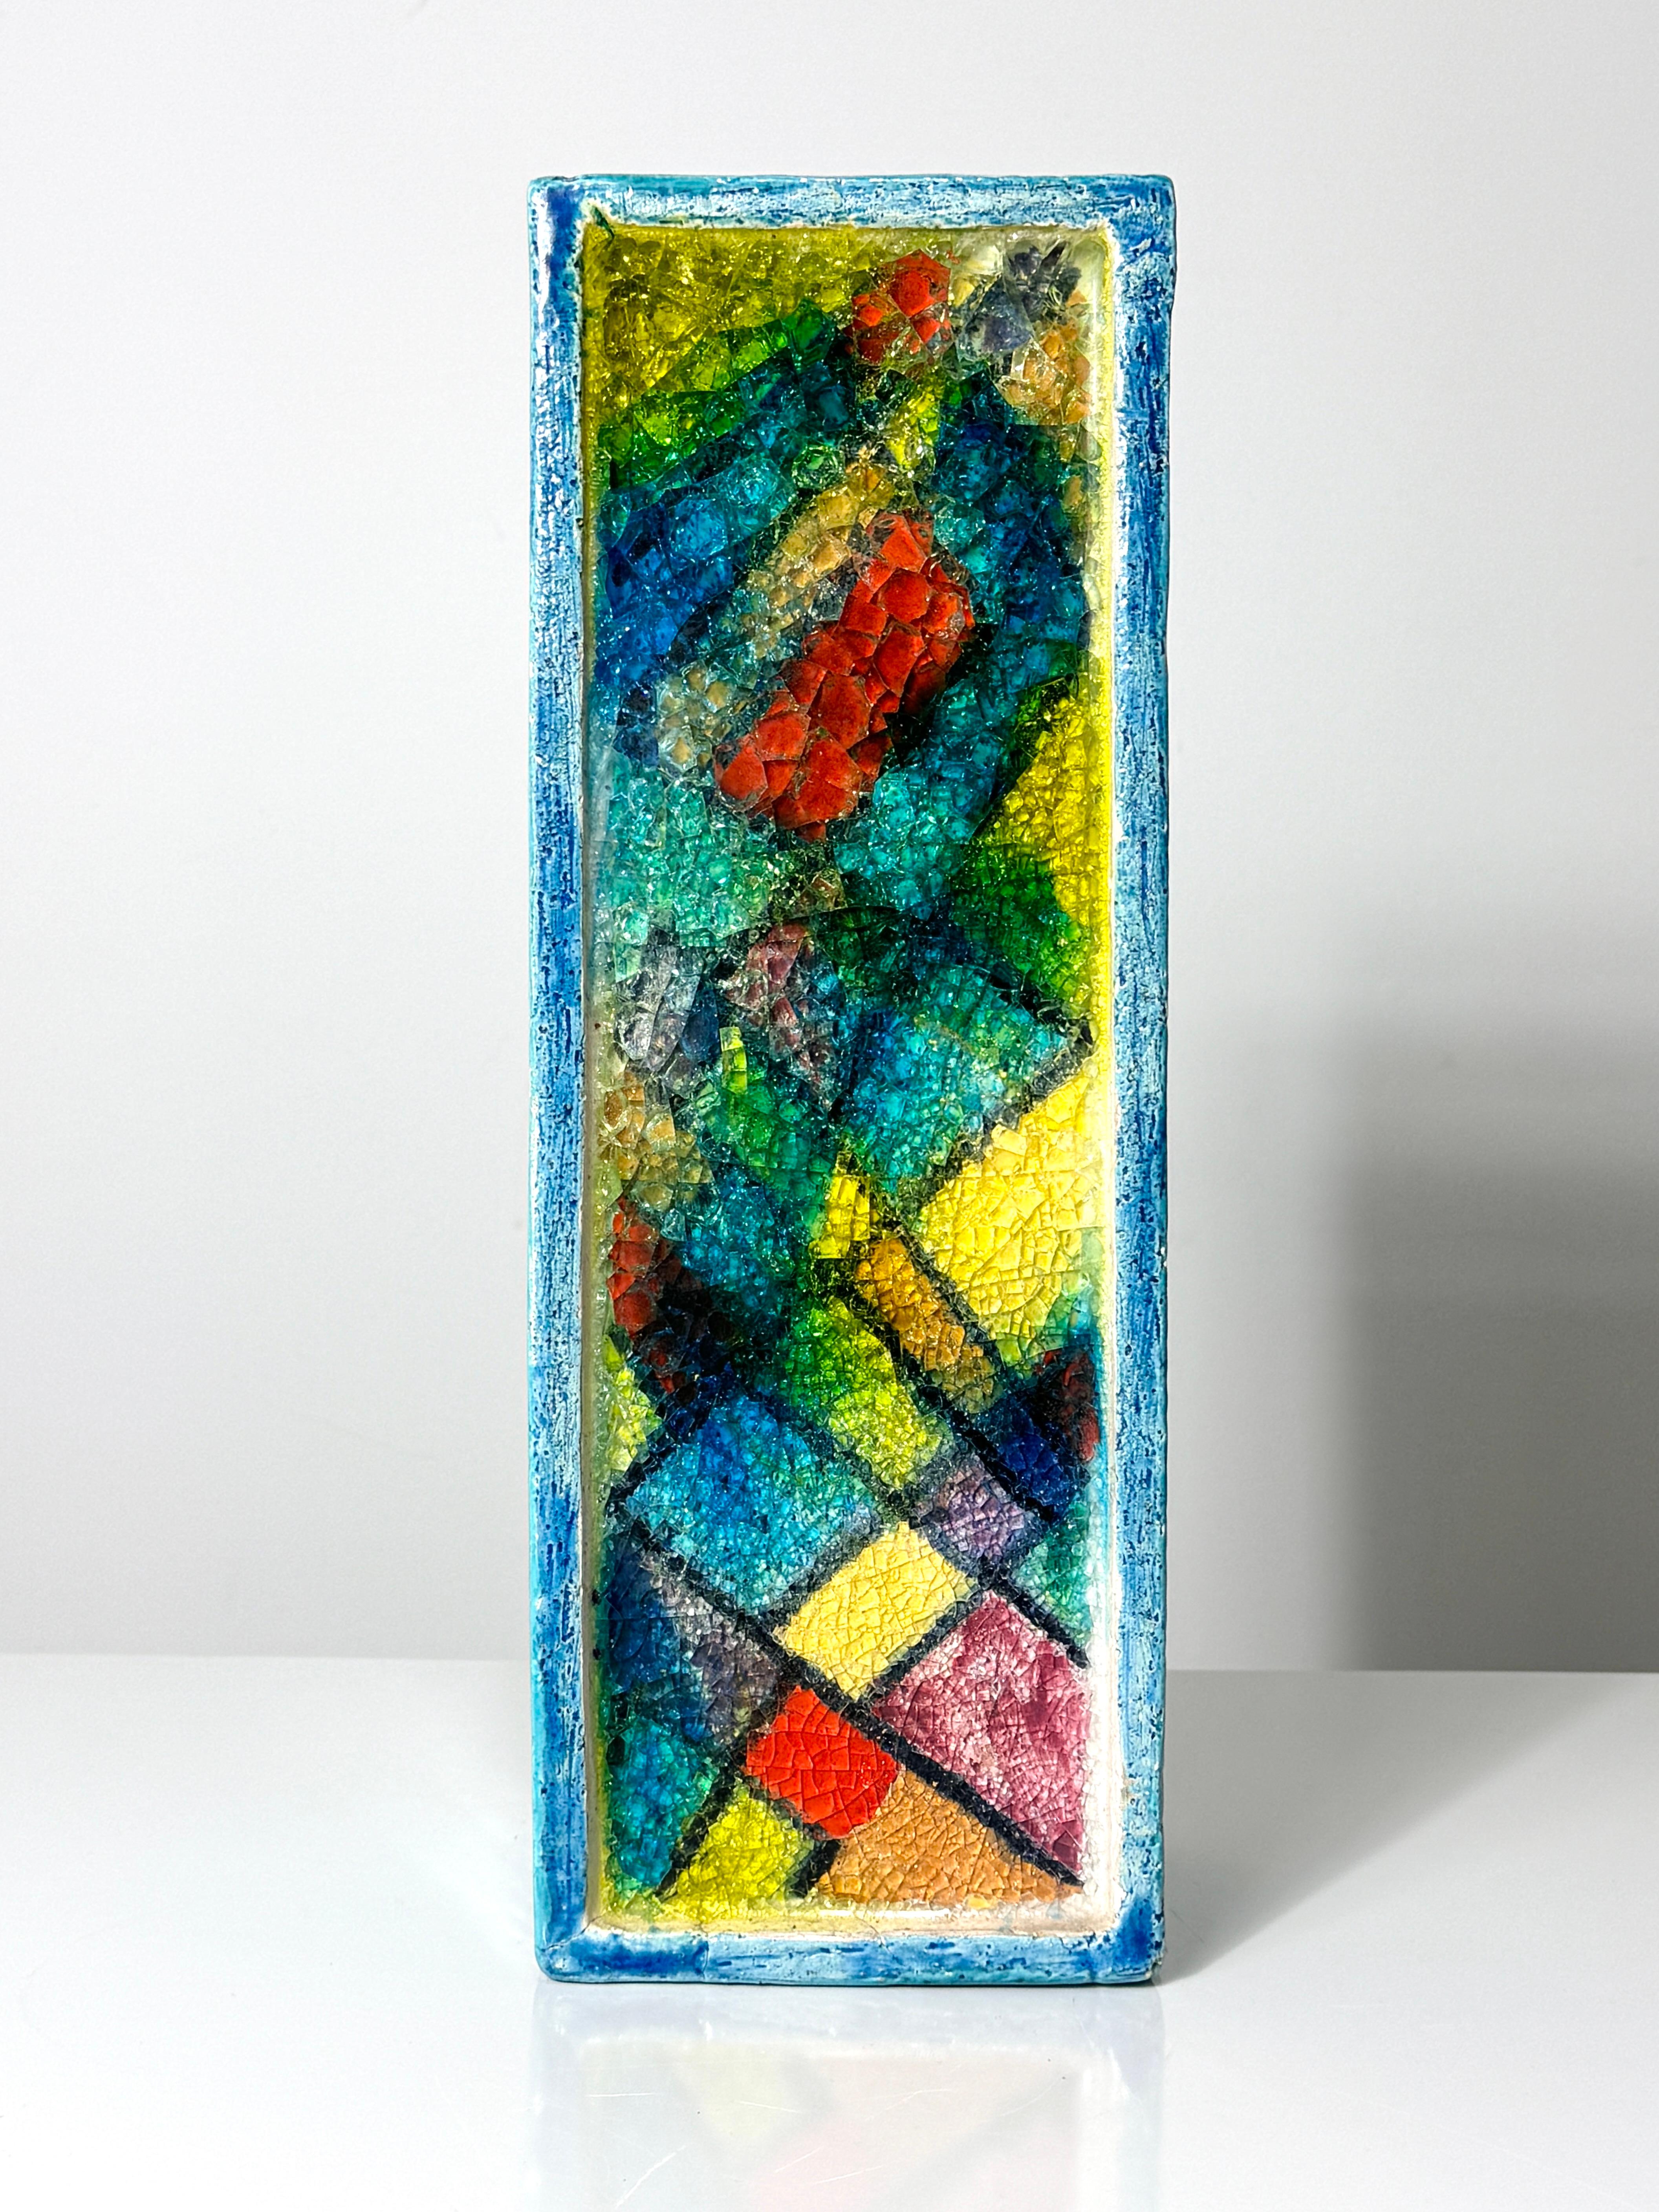 Rare vase rectangulaire Fritte d'Aldo Londi pour Bitossi vers les années 1960

Mosaïque moderniste colorée de verre fusionné incrustée dans un vase formé d'une plaque de céramique émaillée bleu aqua.

Signé au verso avec l'étiquette d'origine